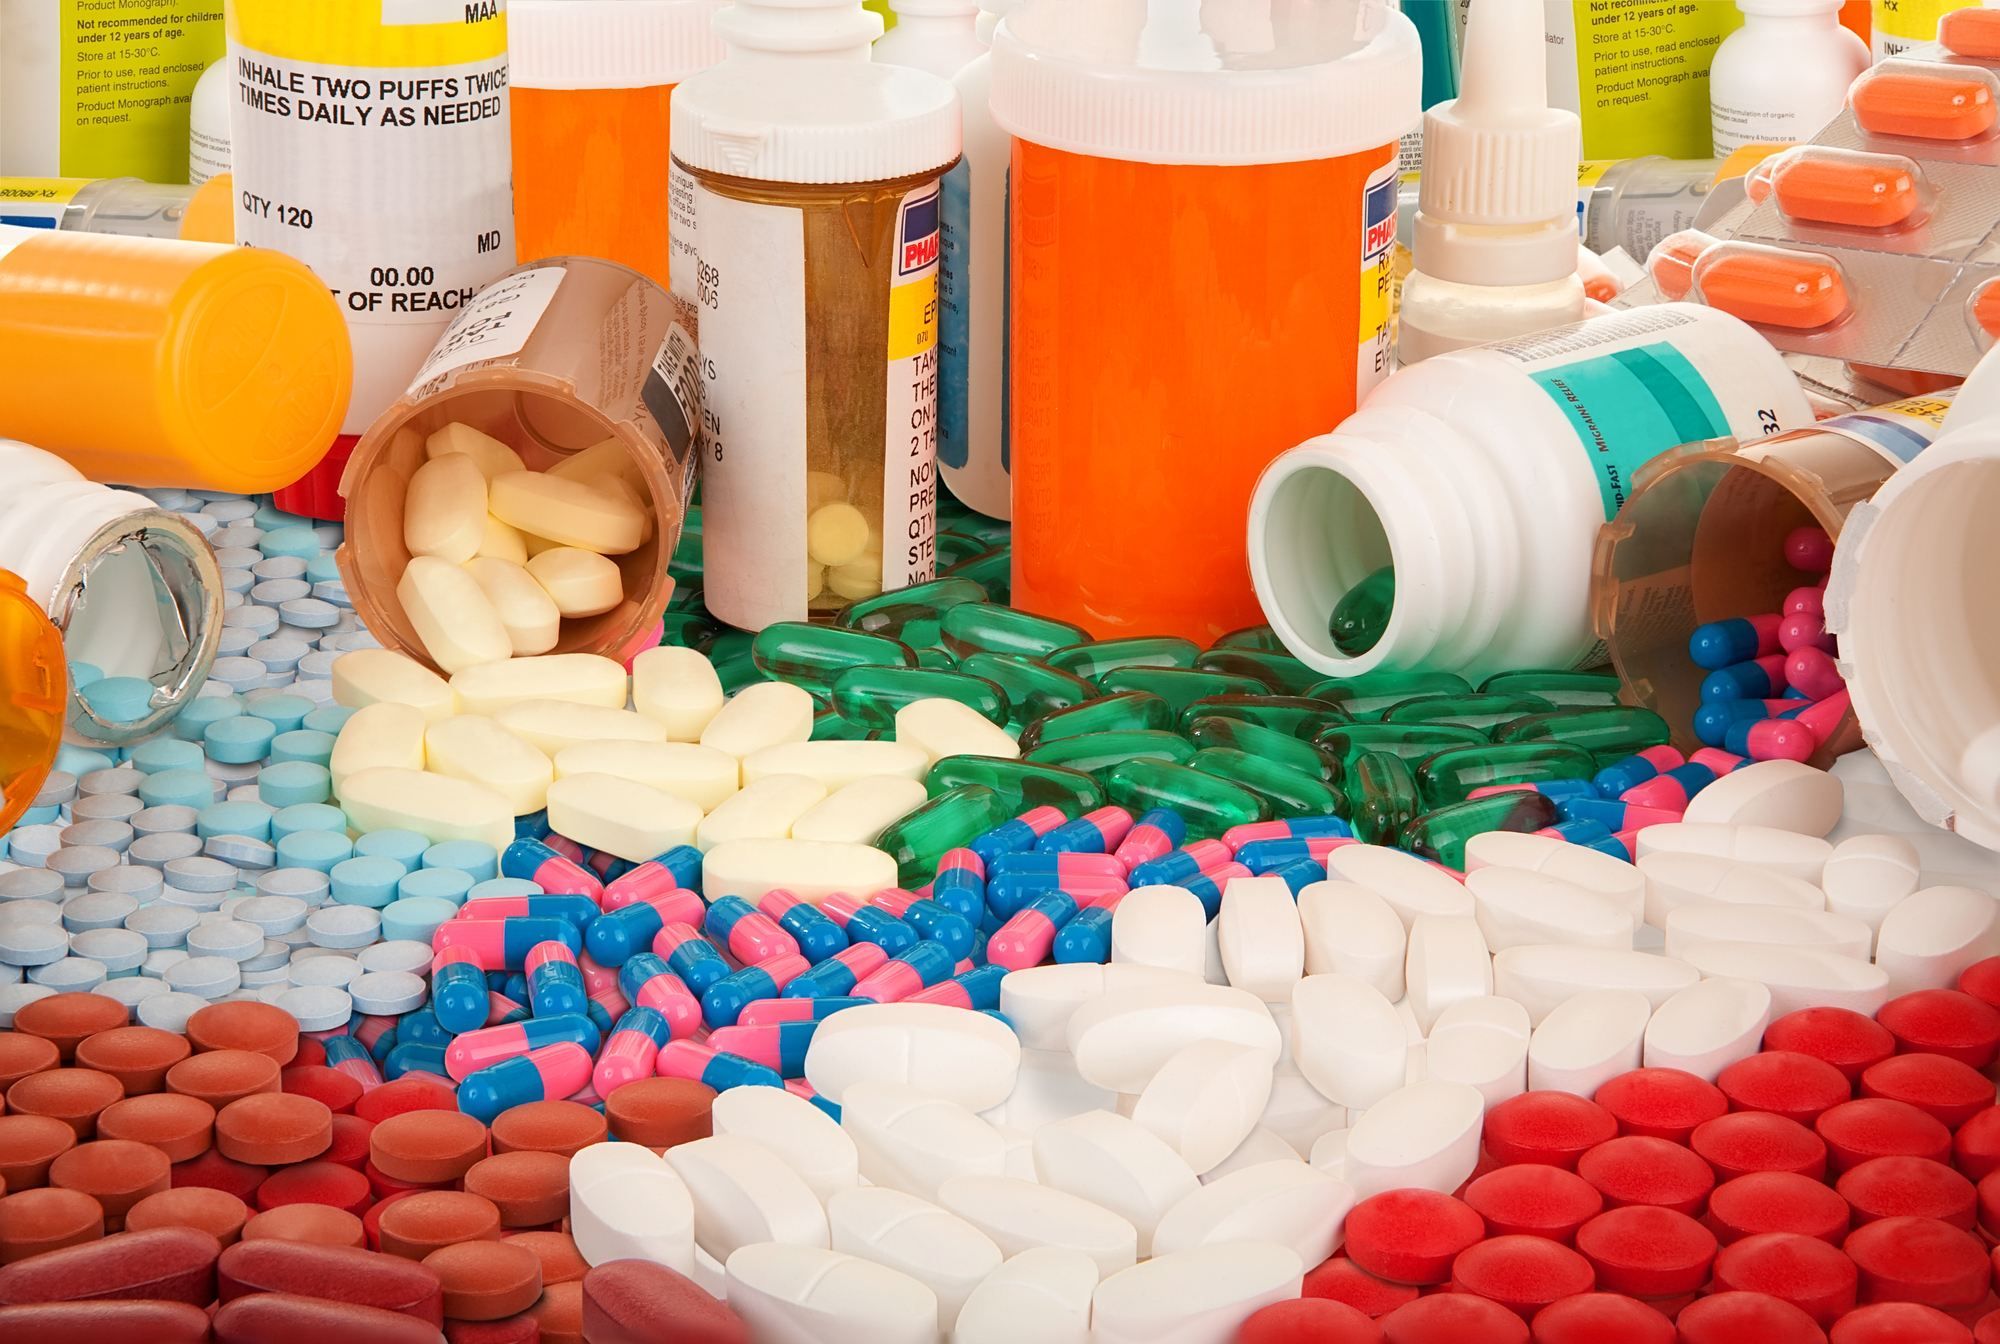 pills and bottles of pharmaceutical drugs